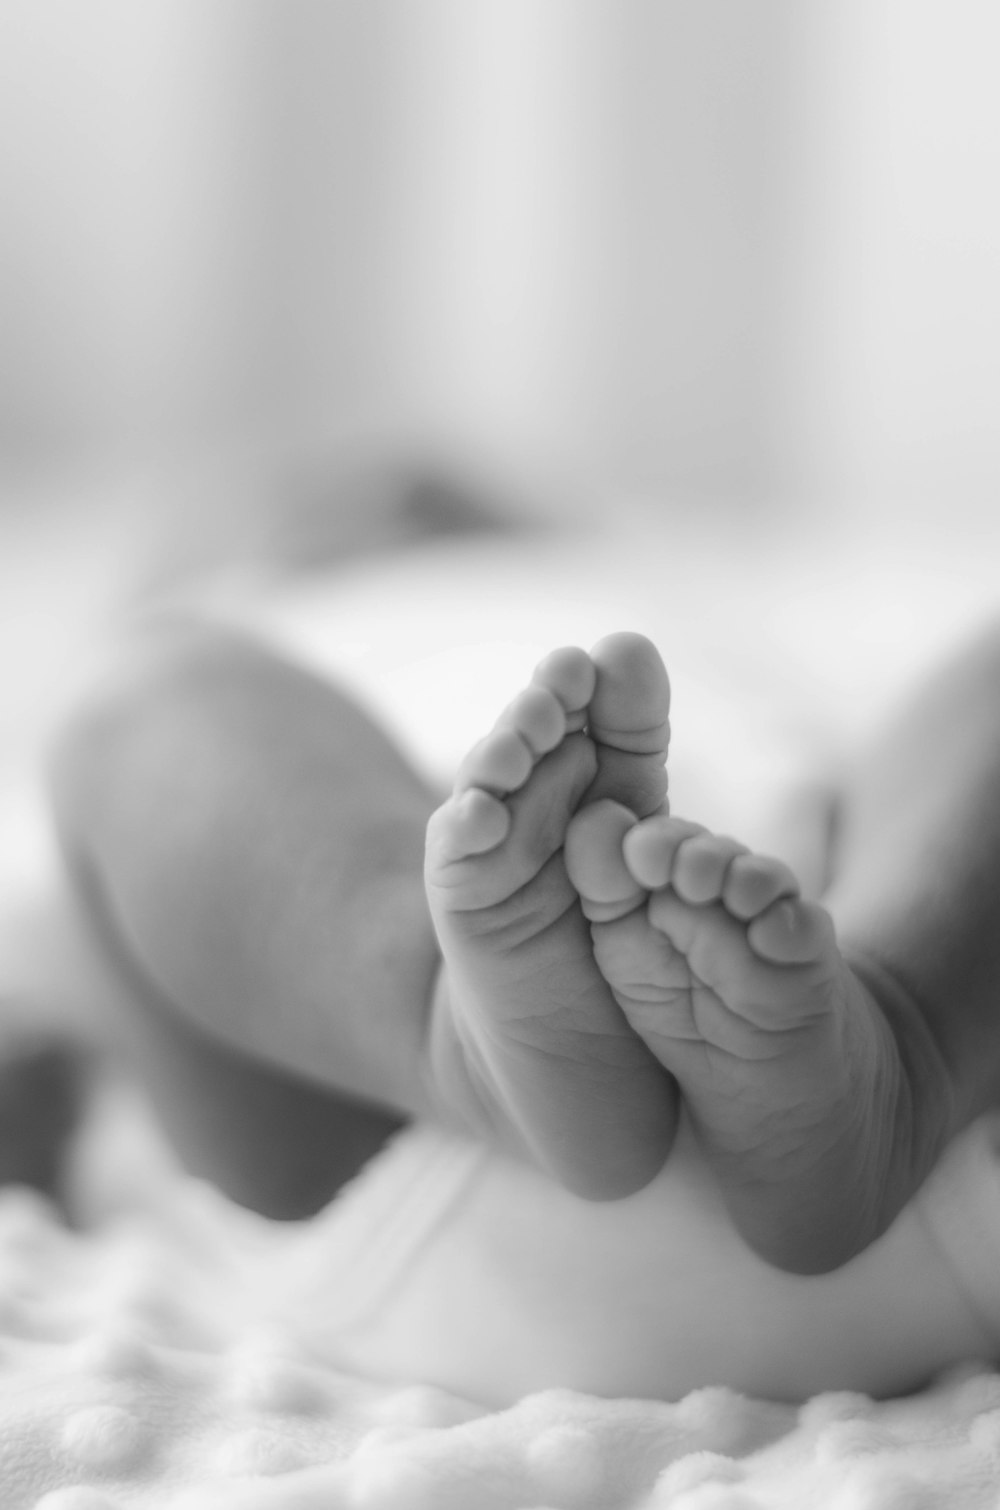 赤ちゃんの足のグレースケール写真